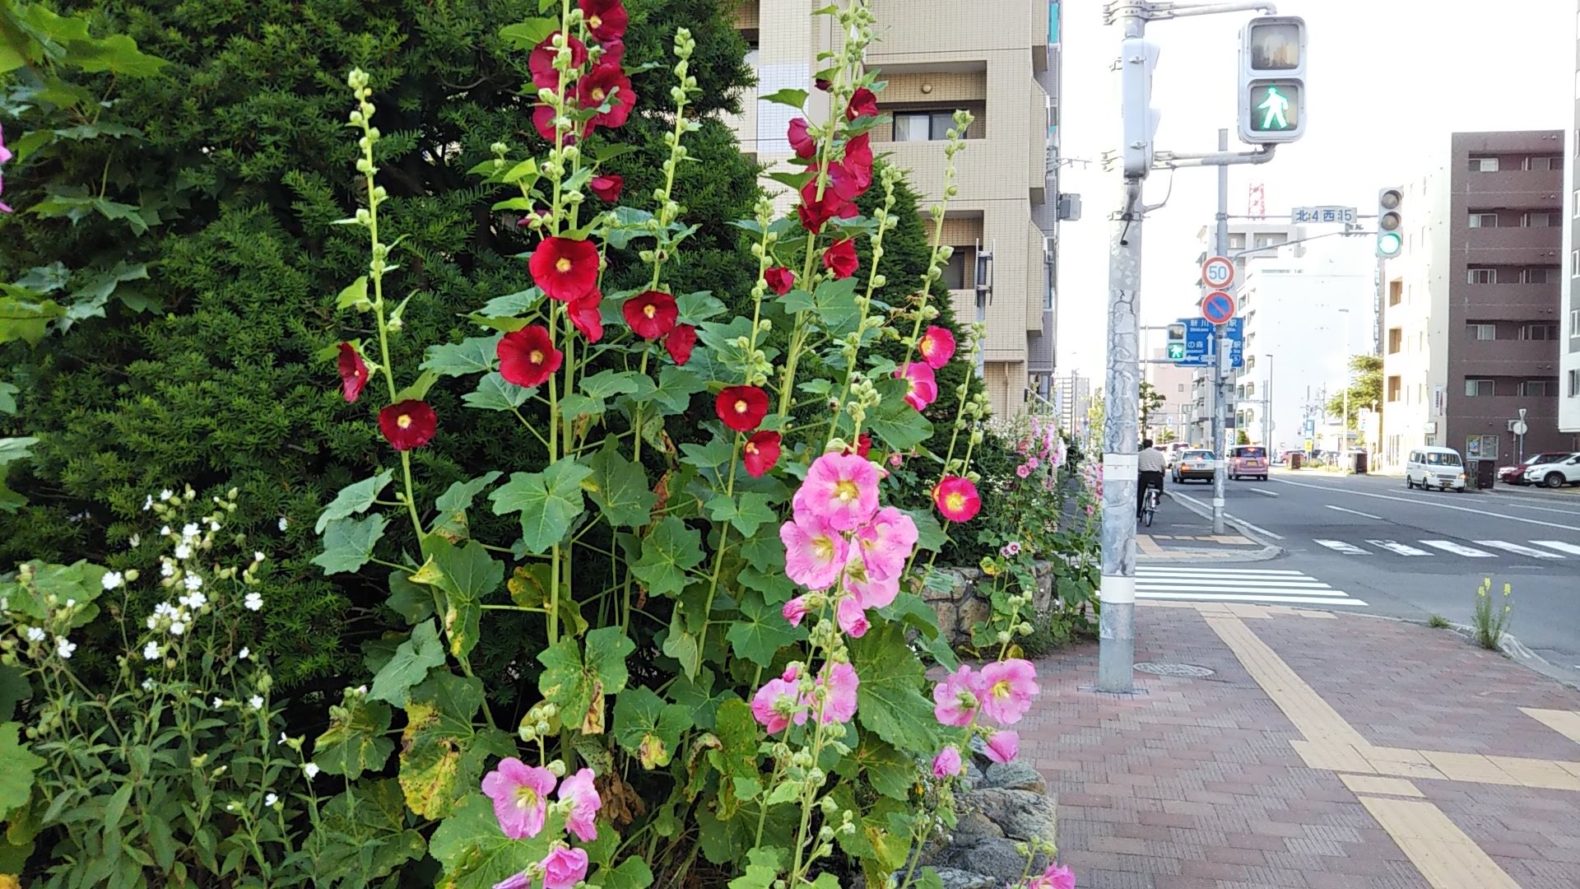 コケコッコー花 を知っていますか 遊んだことありますか コマクサ 札幌円山近郊山登りとお勧めスイーツと雑記